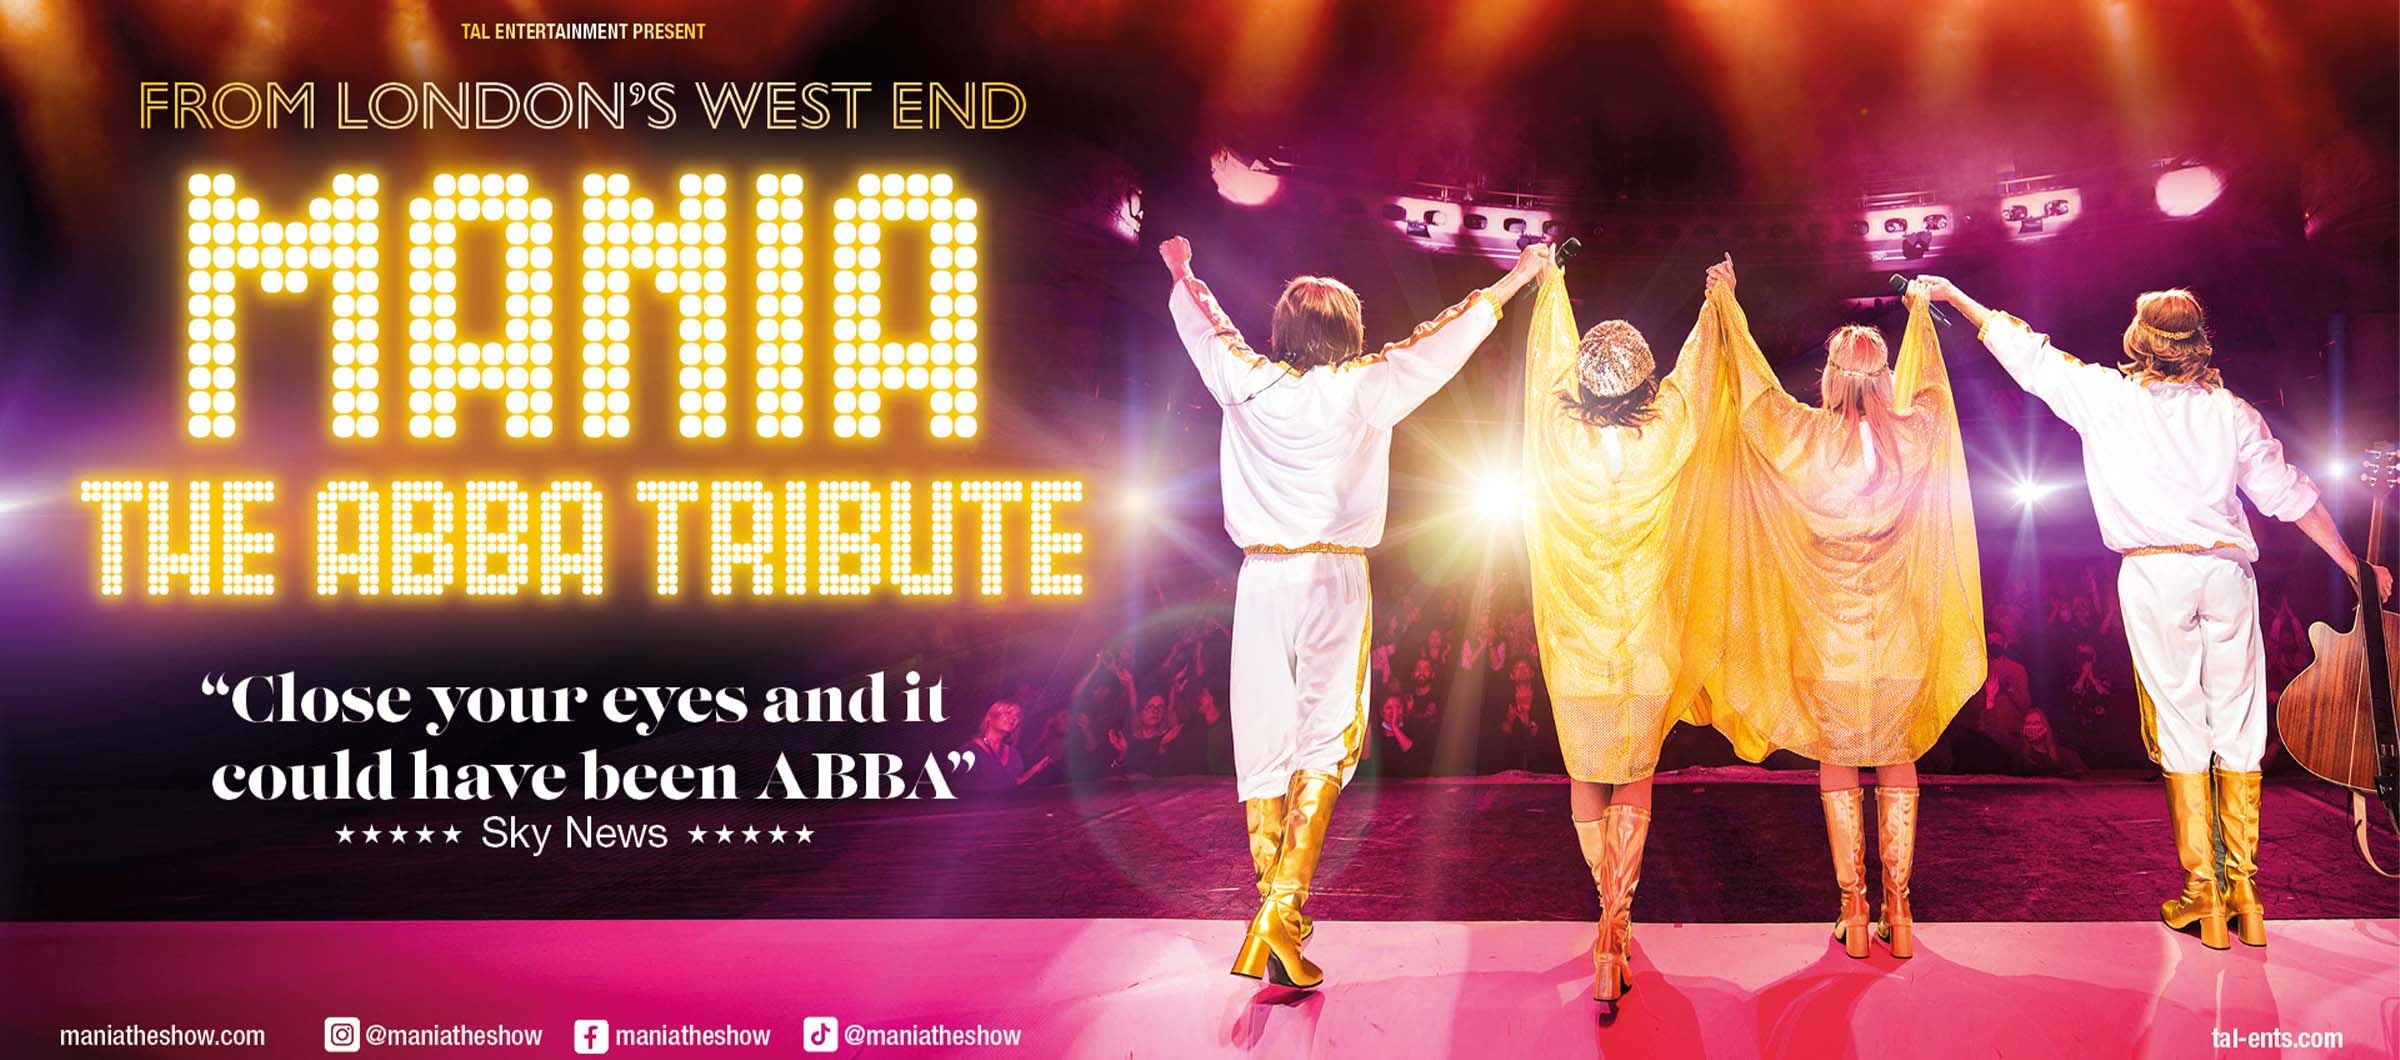 ABBA Mamma Mia – The Tribute Show